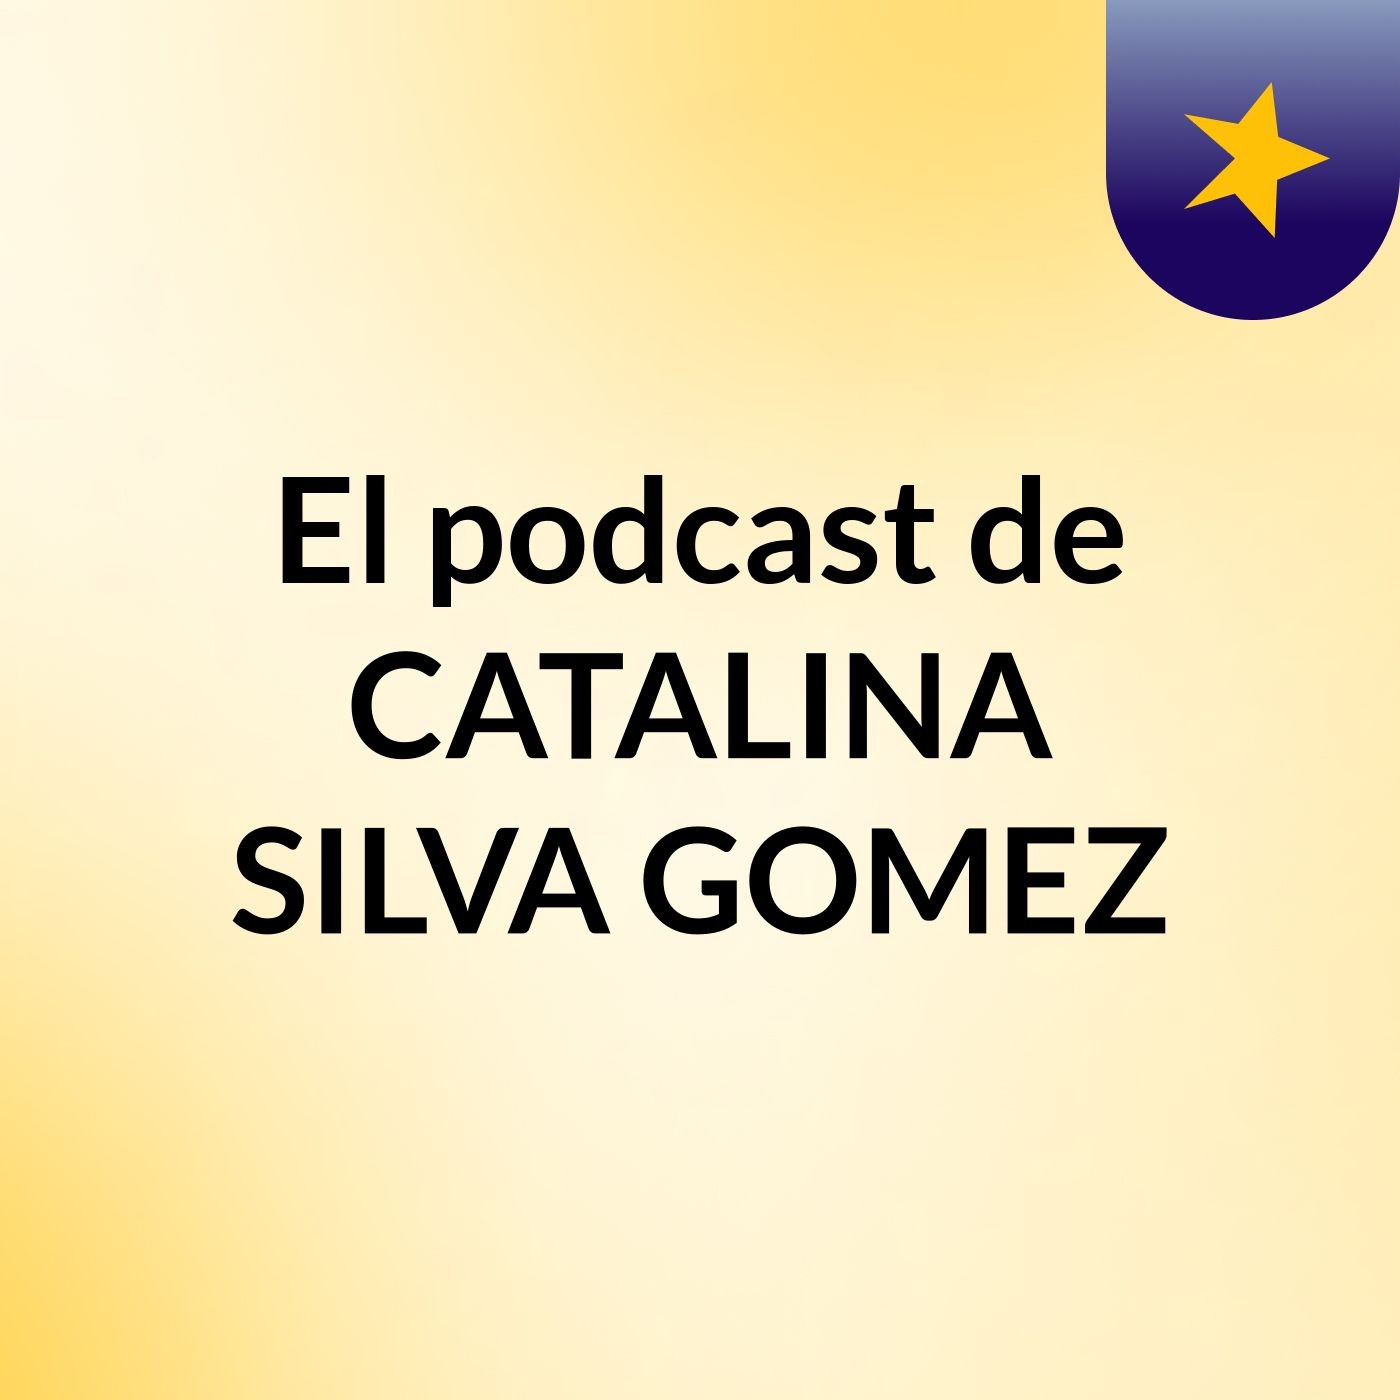 El podcast de CATALINA SILVA GOMEZ